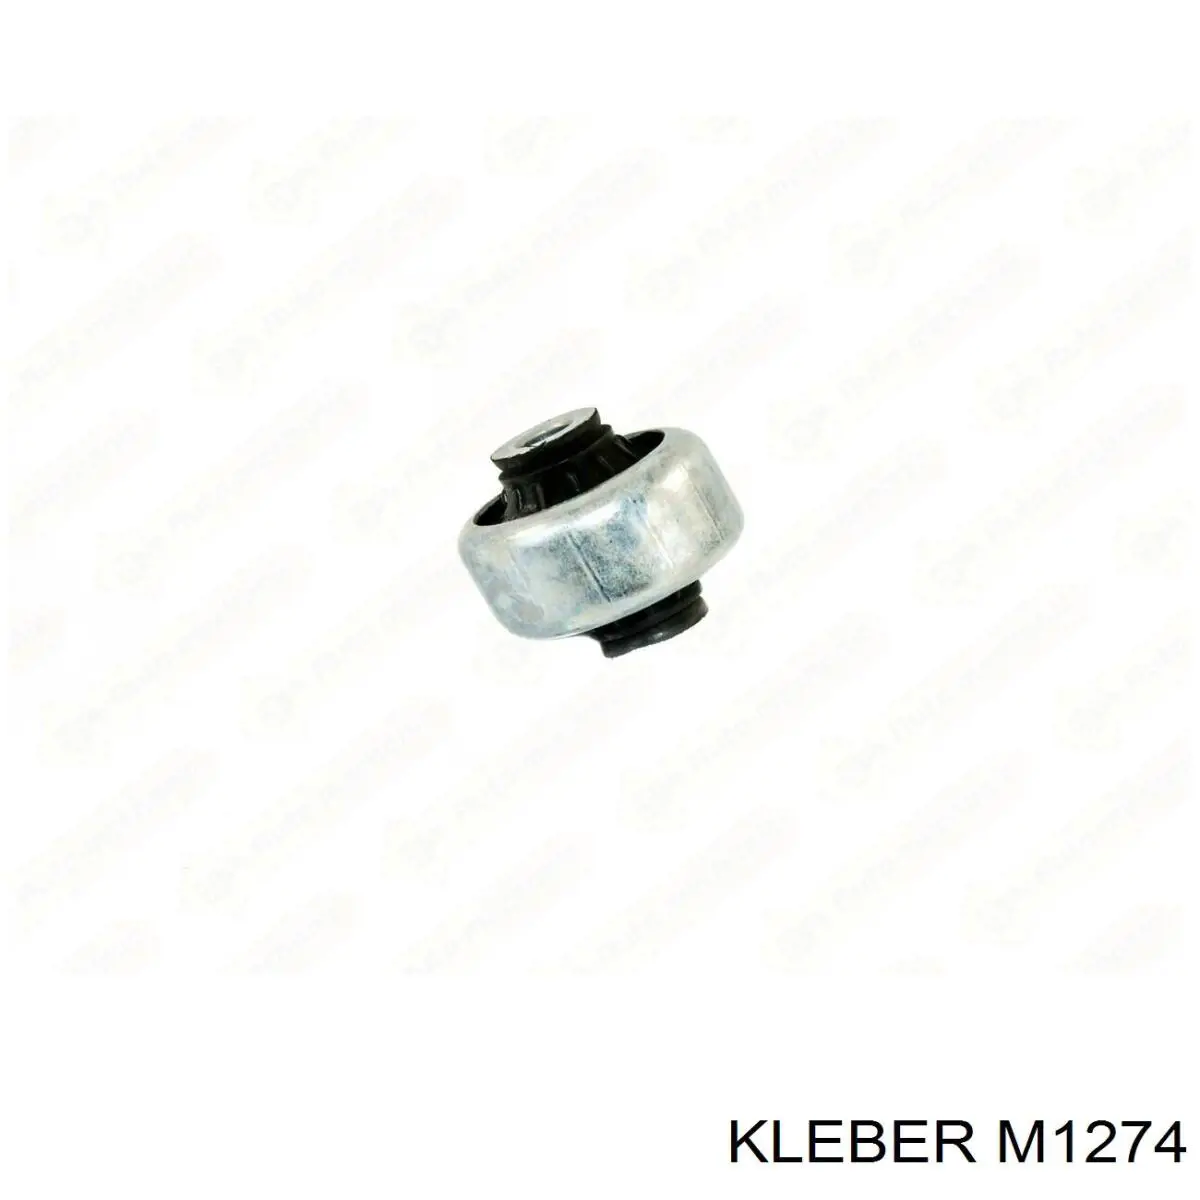 M1274 Kleber silentblock de suspensión delantero inferior